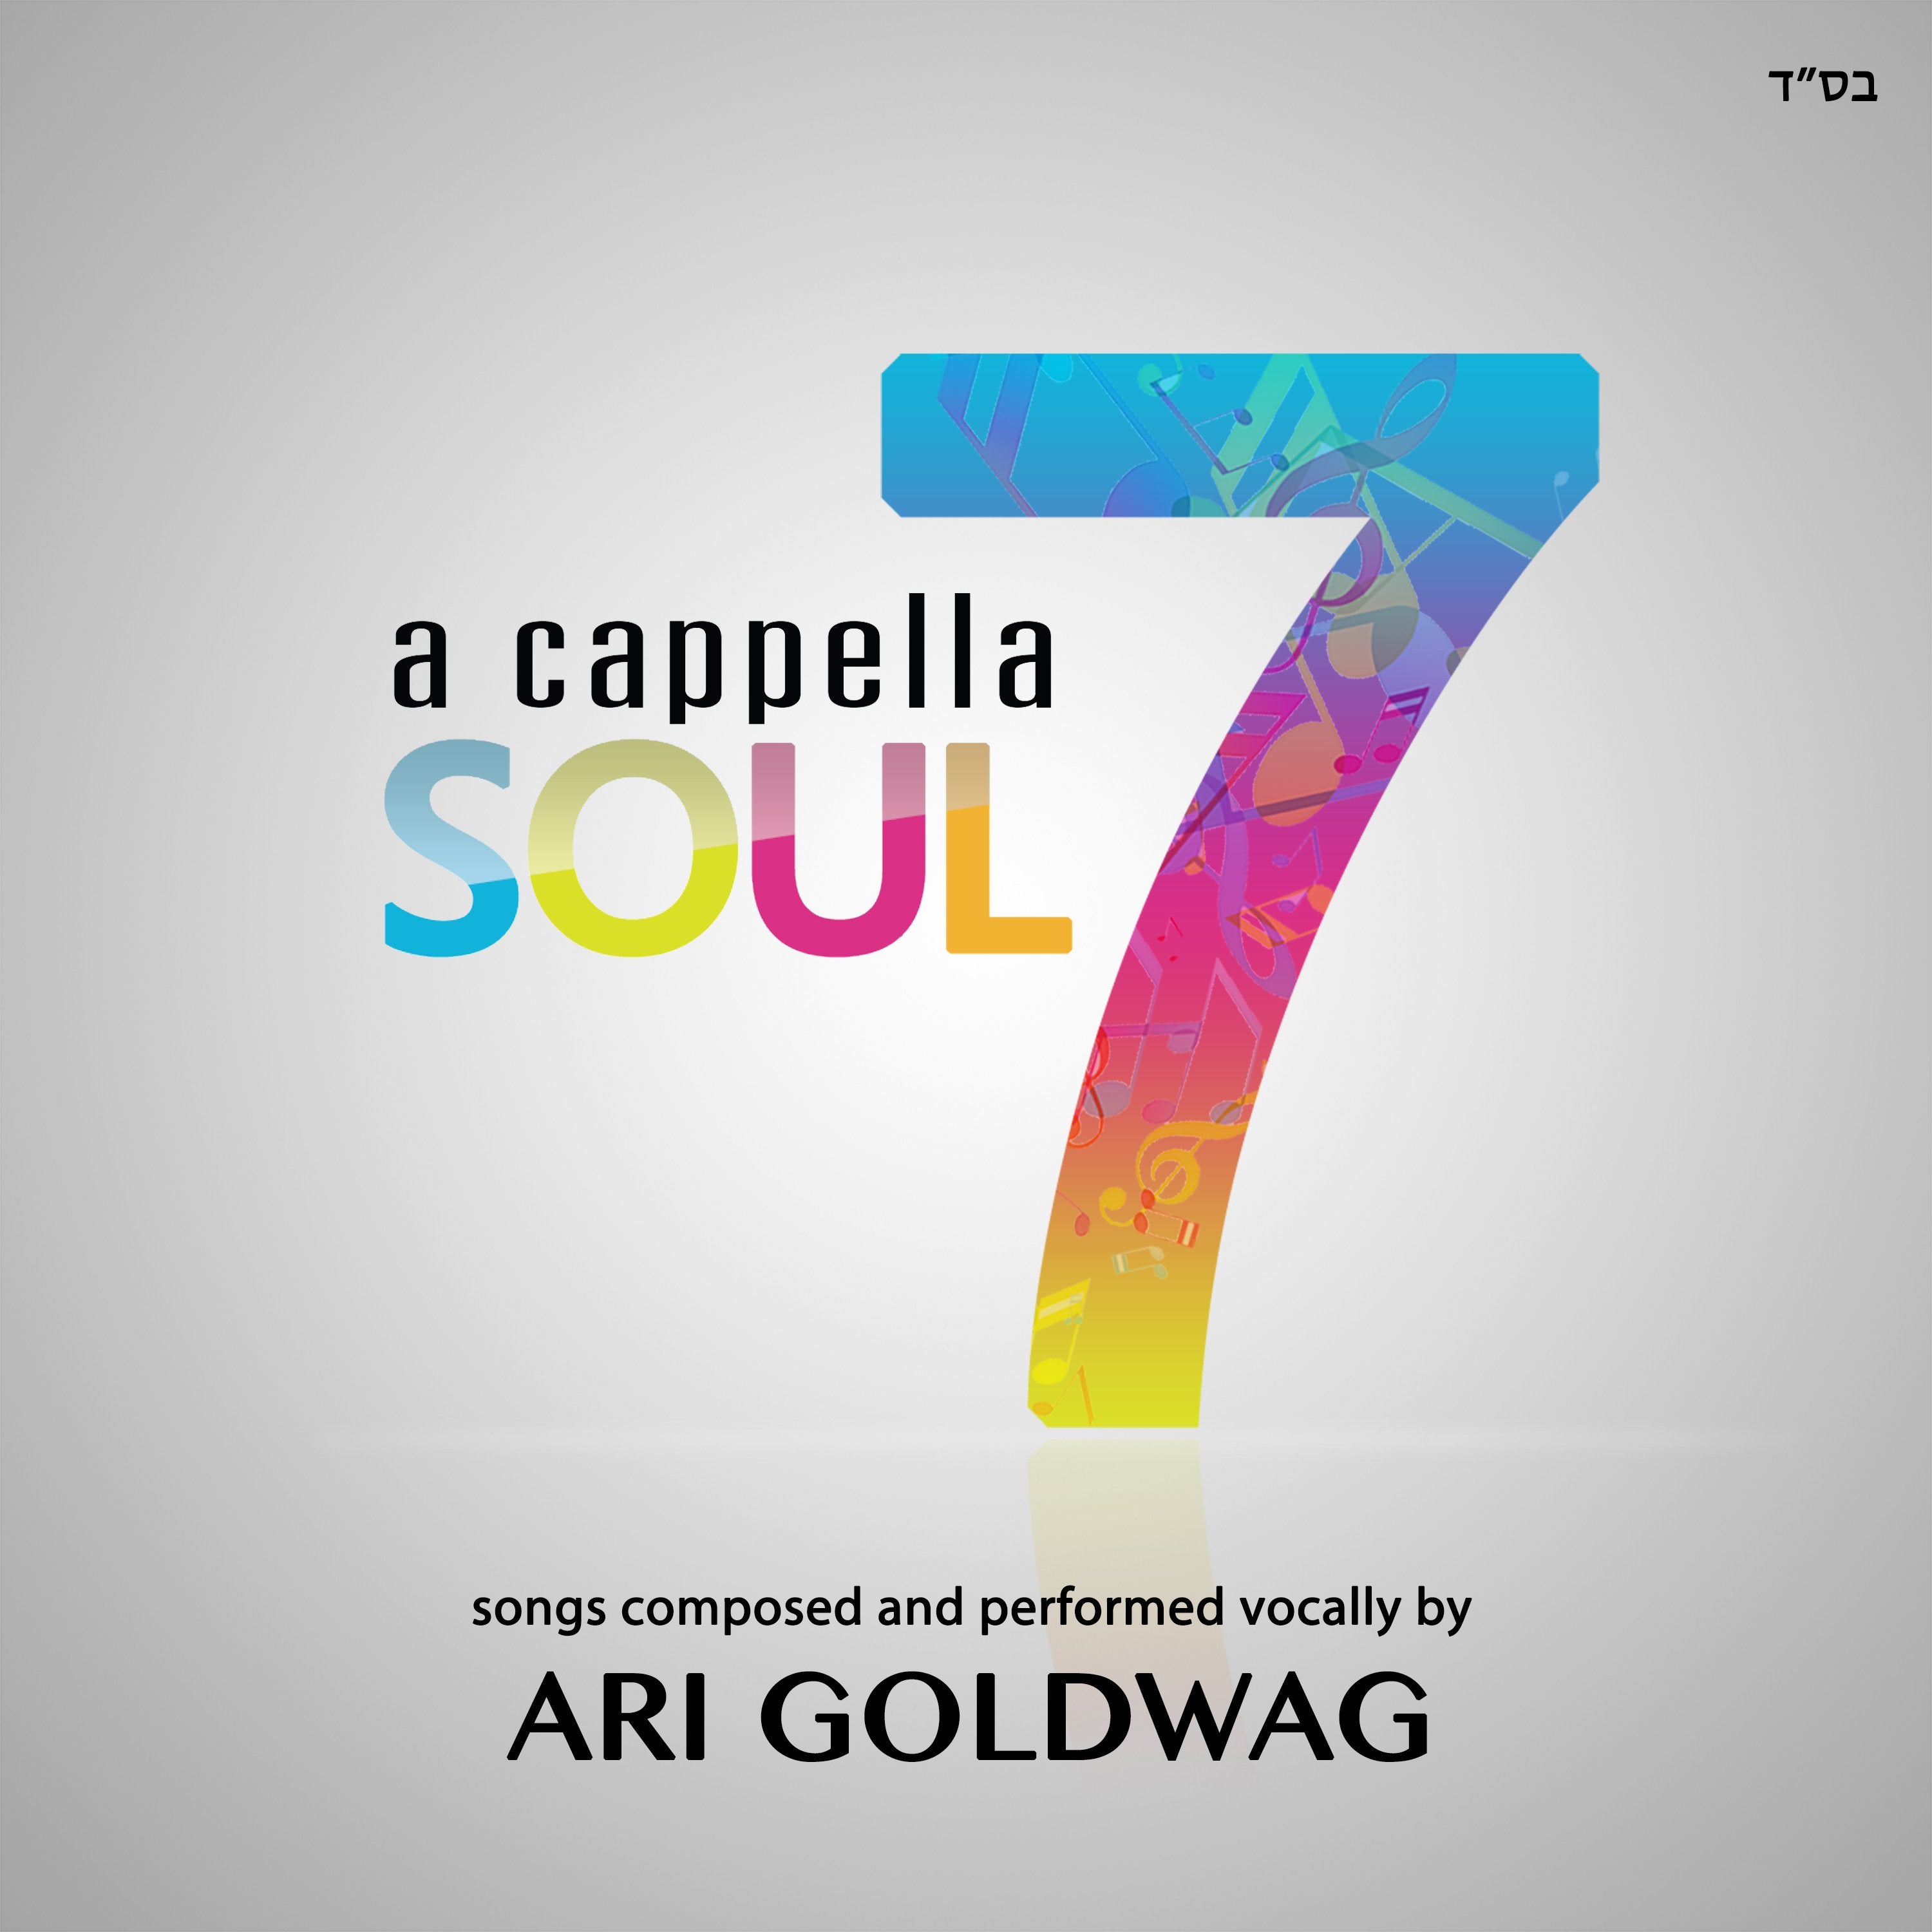 Ari Goldwag - Acapella Soul 7